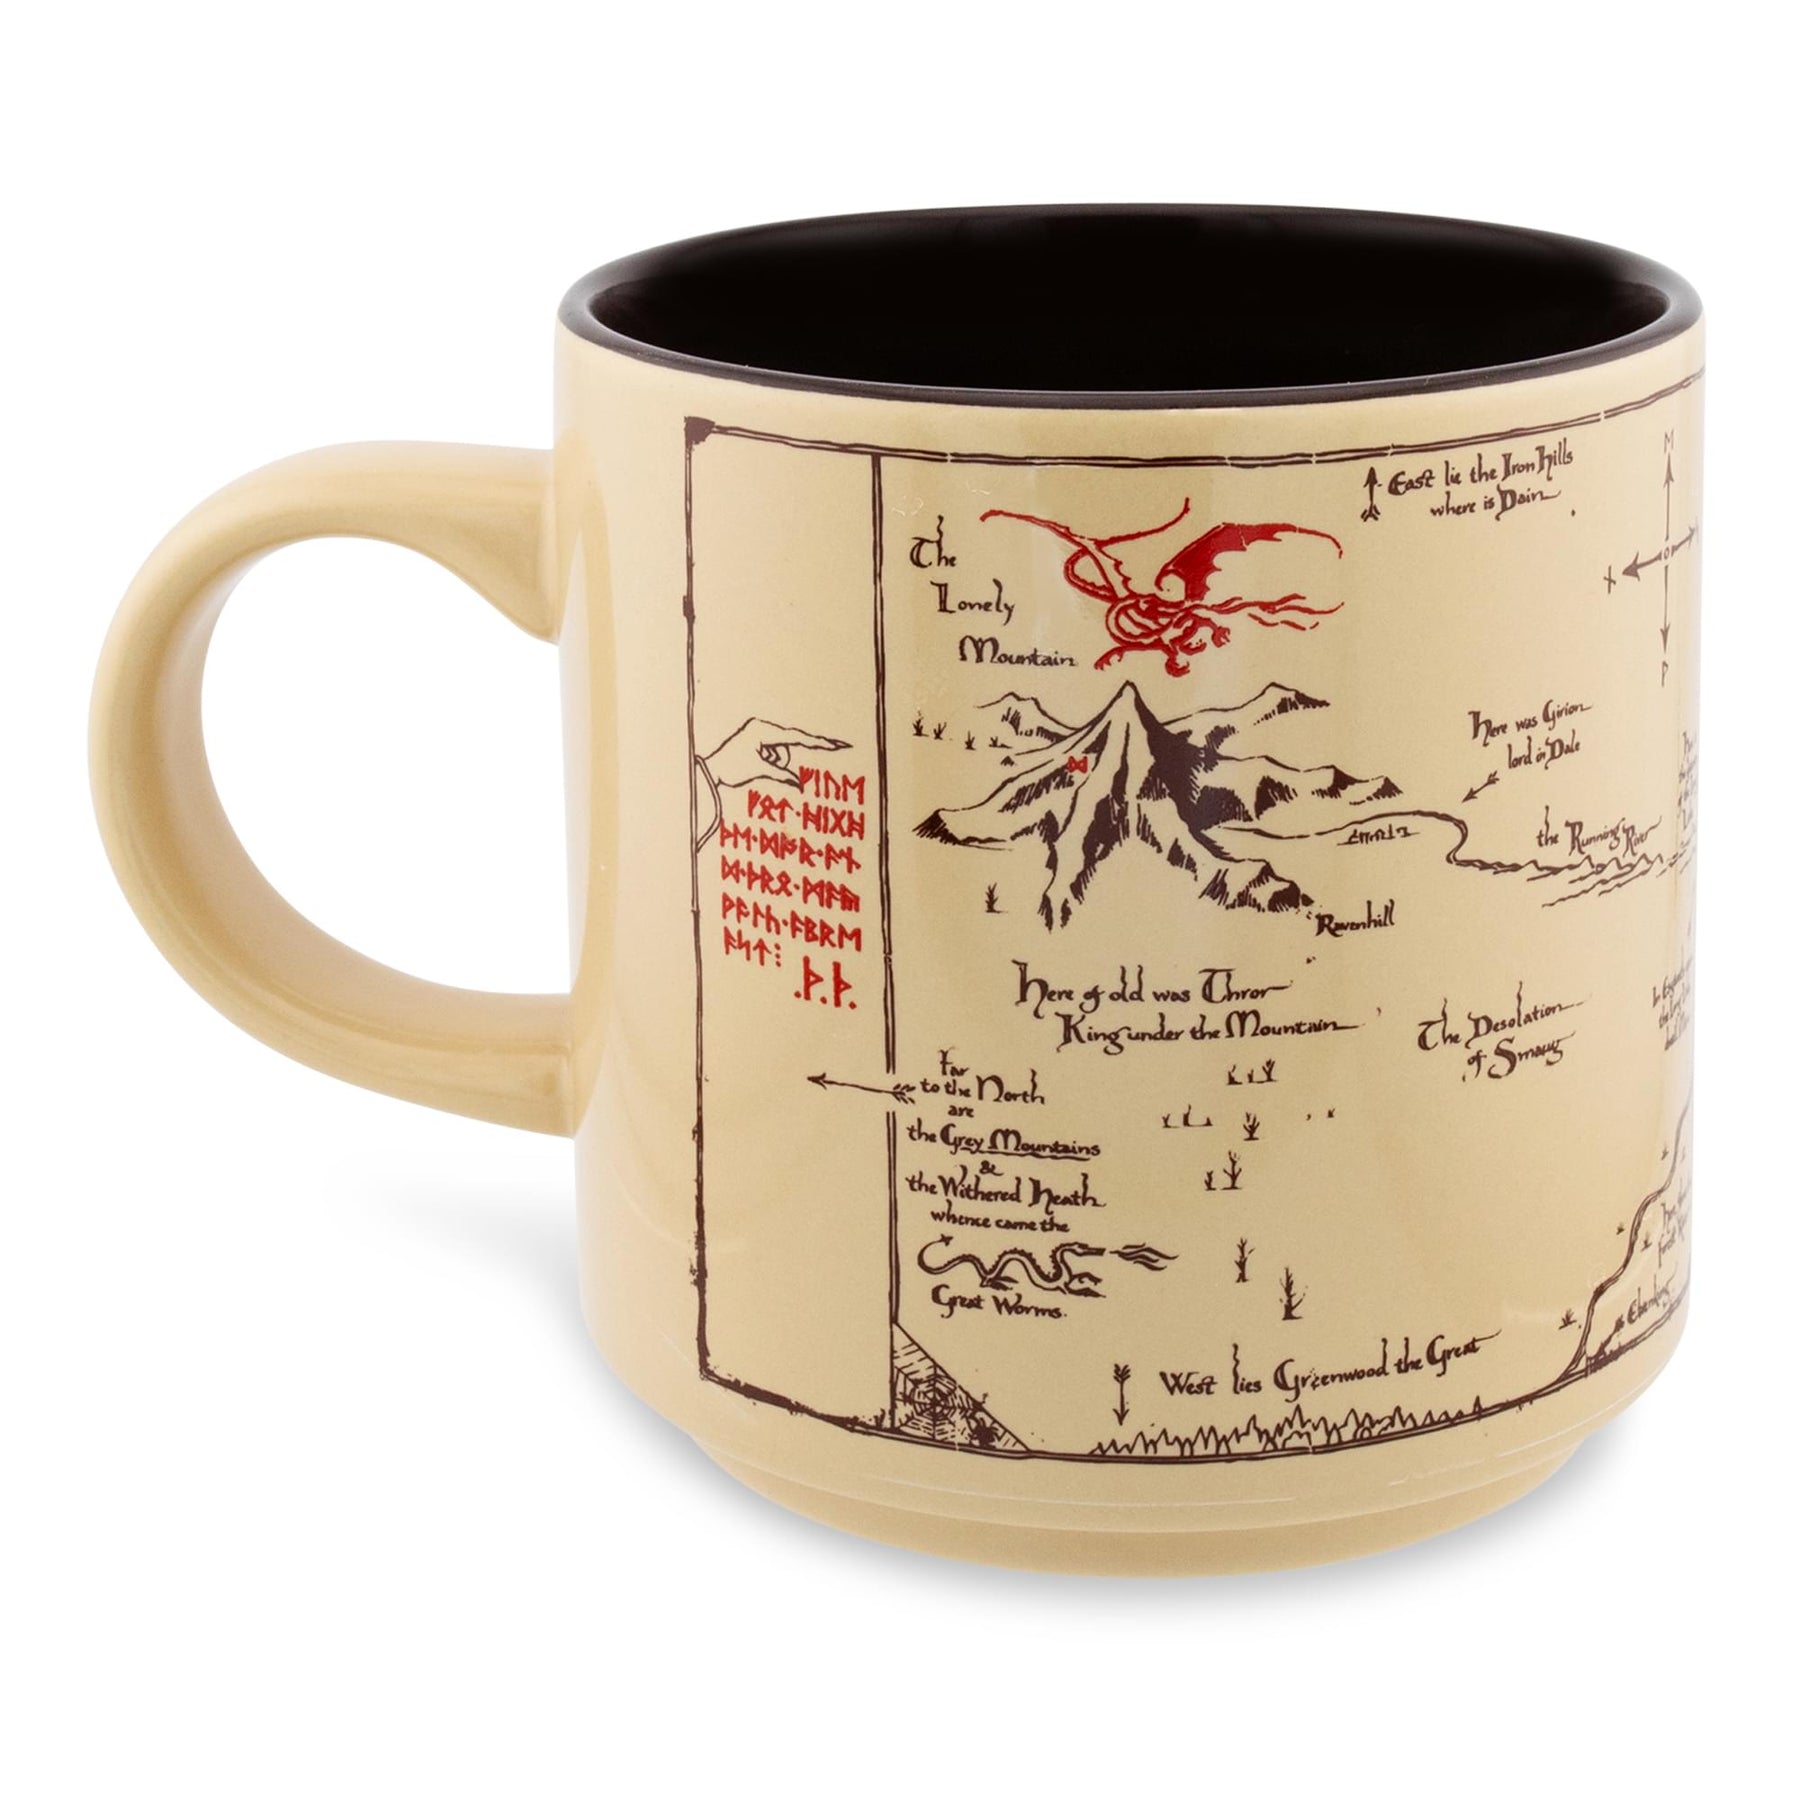 The Hobbit The Shire Map Ceramic Mug | Holds 13 Ounces